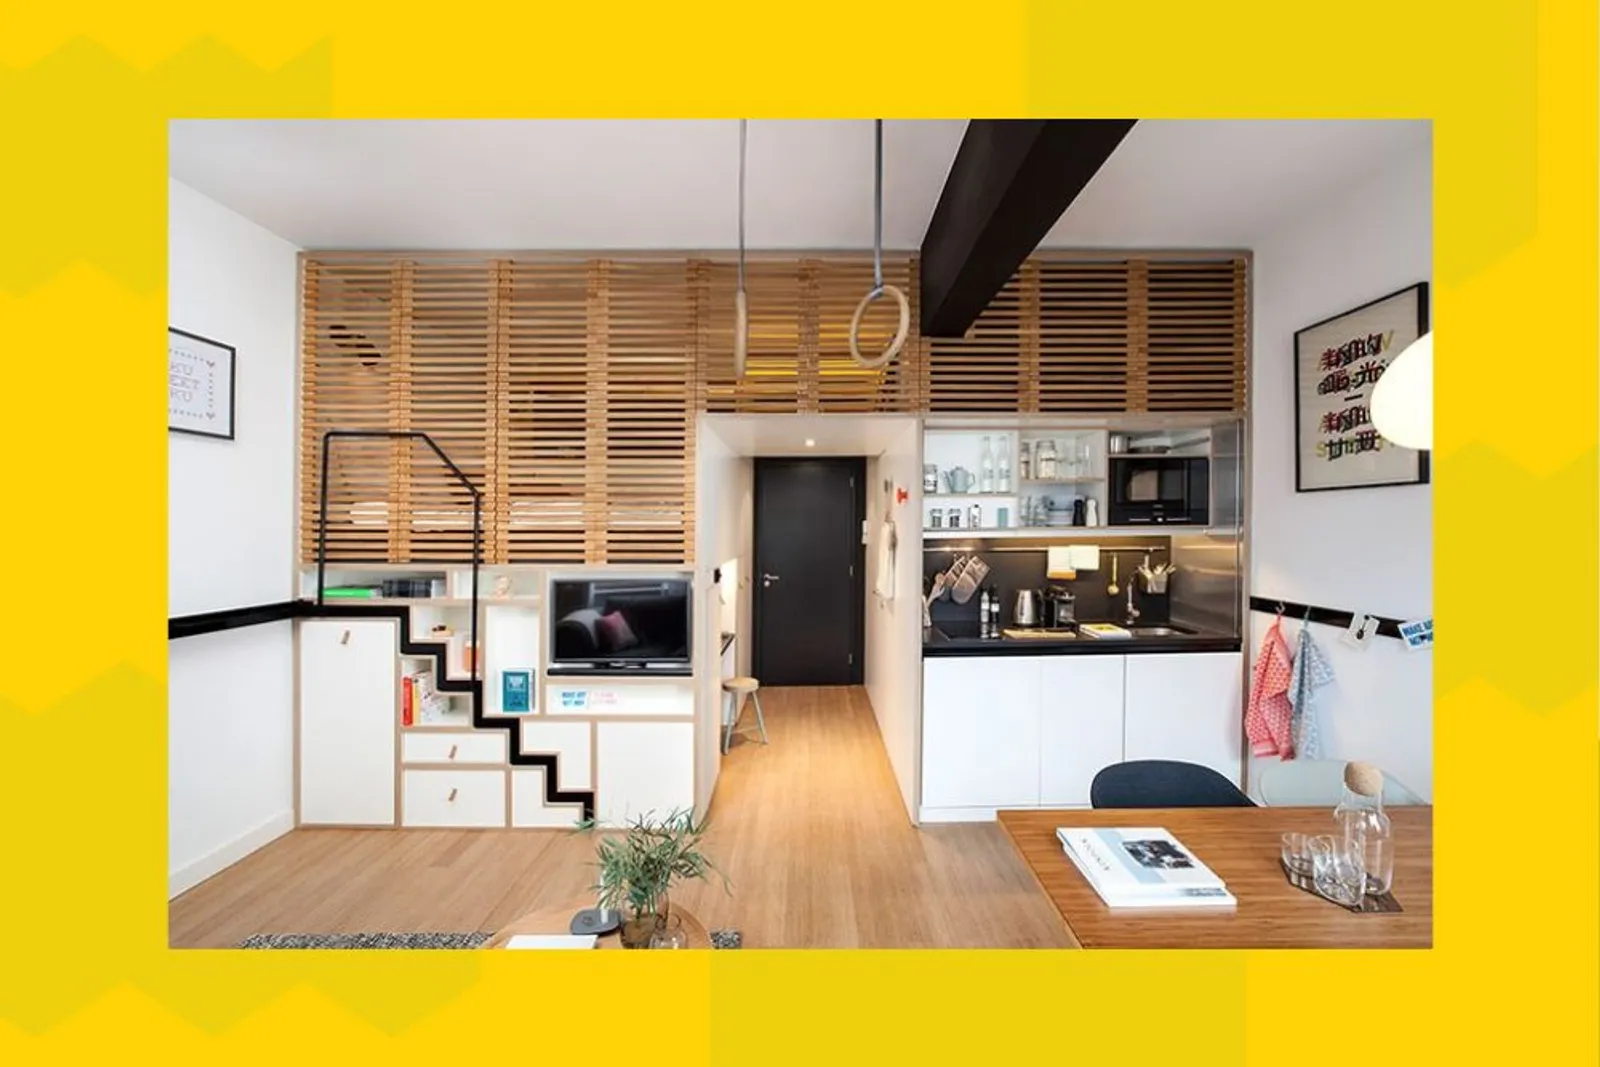 9 Inspirasi Desain Tangga bagi Rumah yang Sempit dan Sederhana